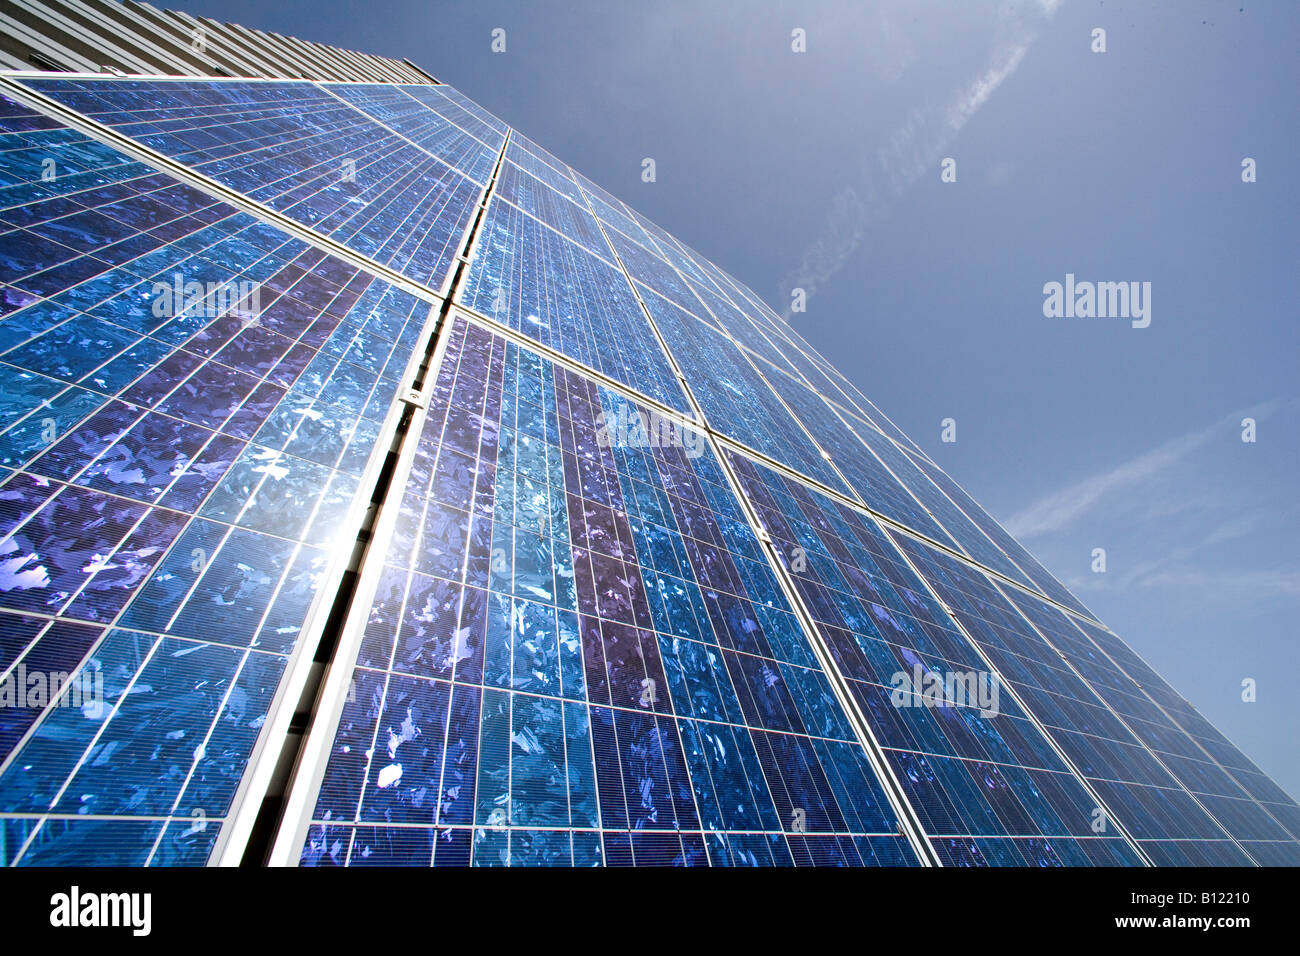 Sito di produzione per i pannelli solari della aleo solar AG in Prenzlau pannelli solari all'esterno dell'impianto Foto Stock